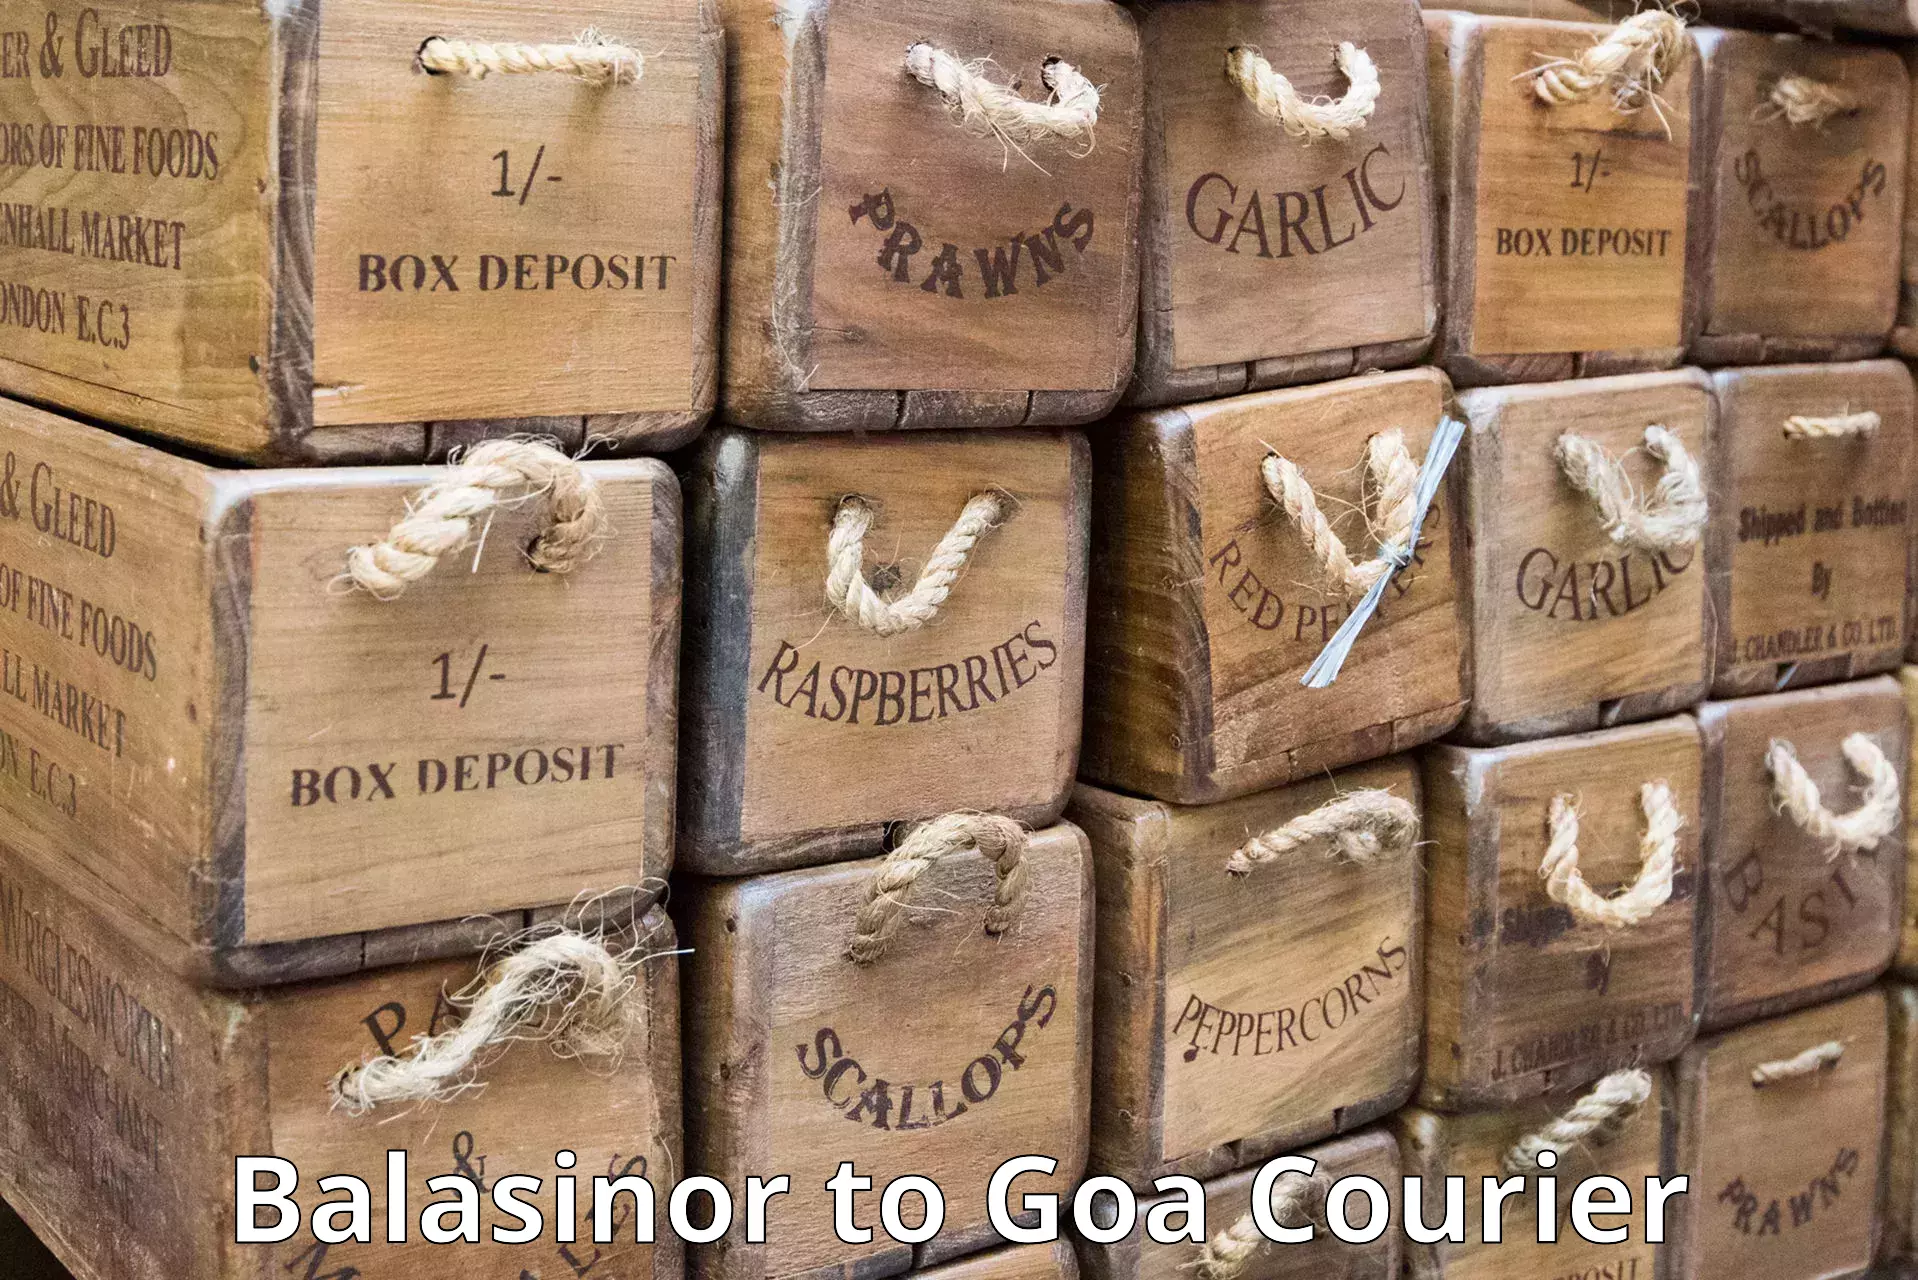 Efficient shipping platforms Balasinor to Vasco da Gama